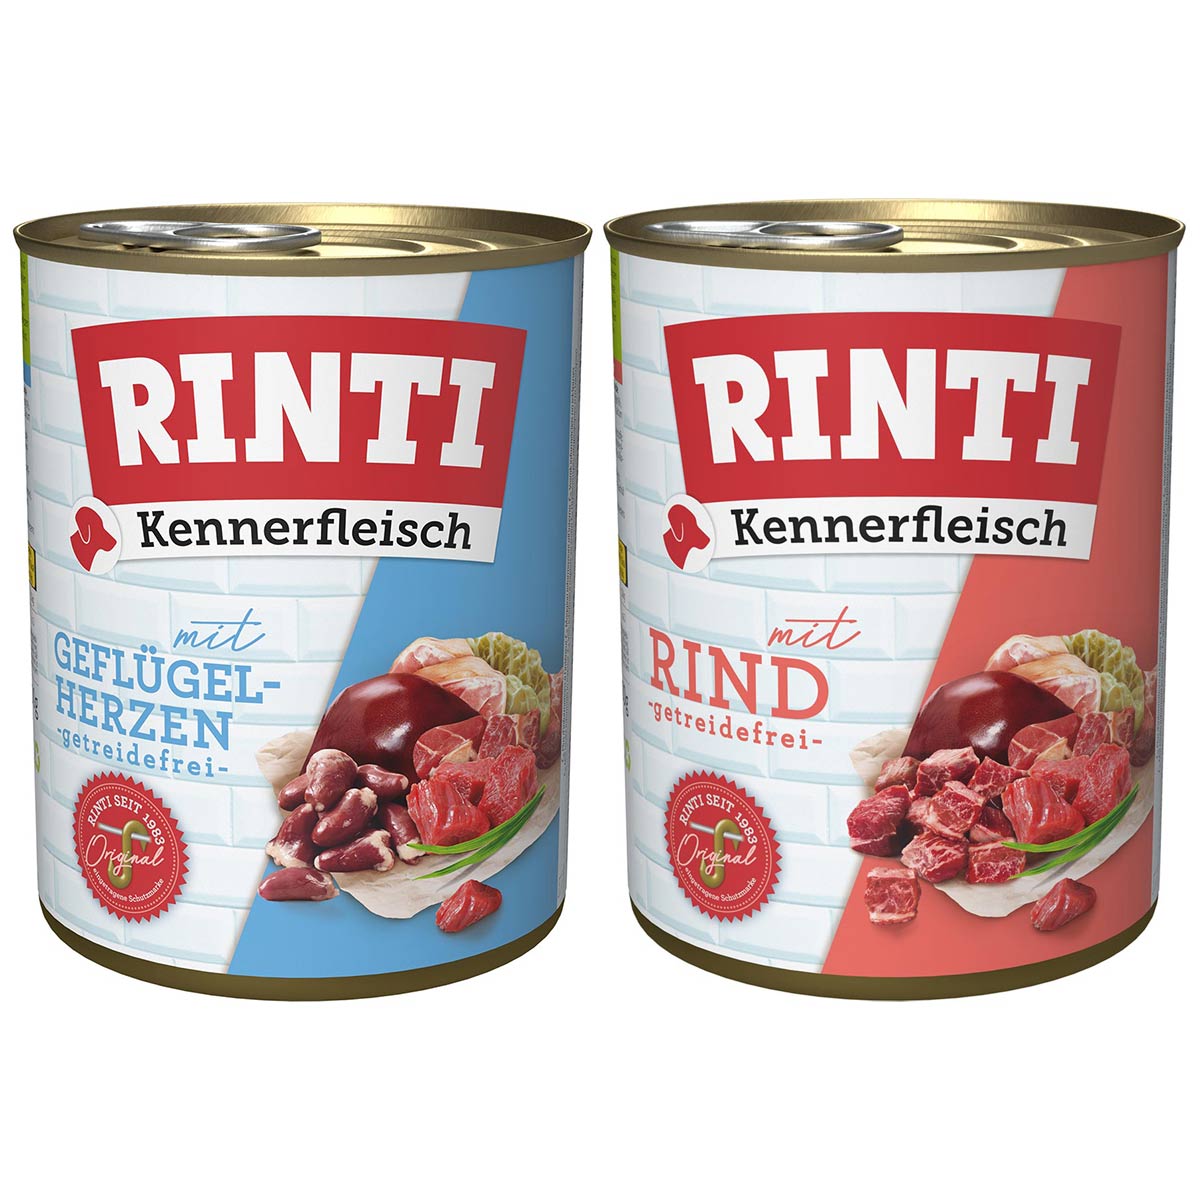 Rinti Kennerfleisch Mix Rind & Geflügelherzen 24x800g